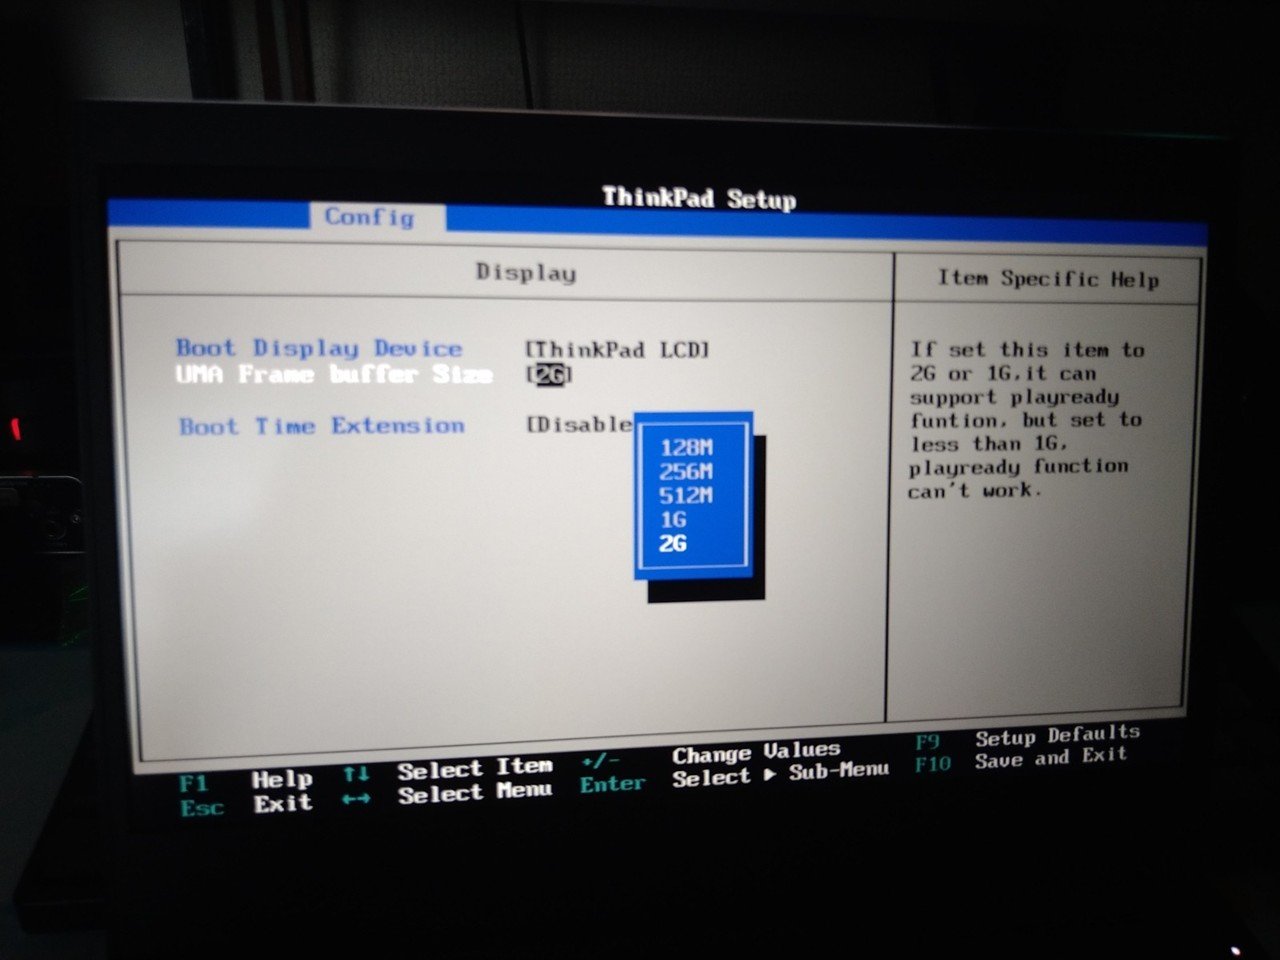 レノボ ThinkPad E495 Ryzen 5/4GB/128GB 残り1個